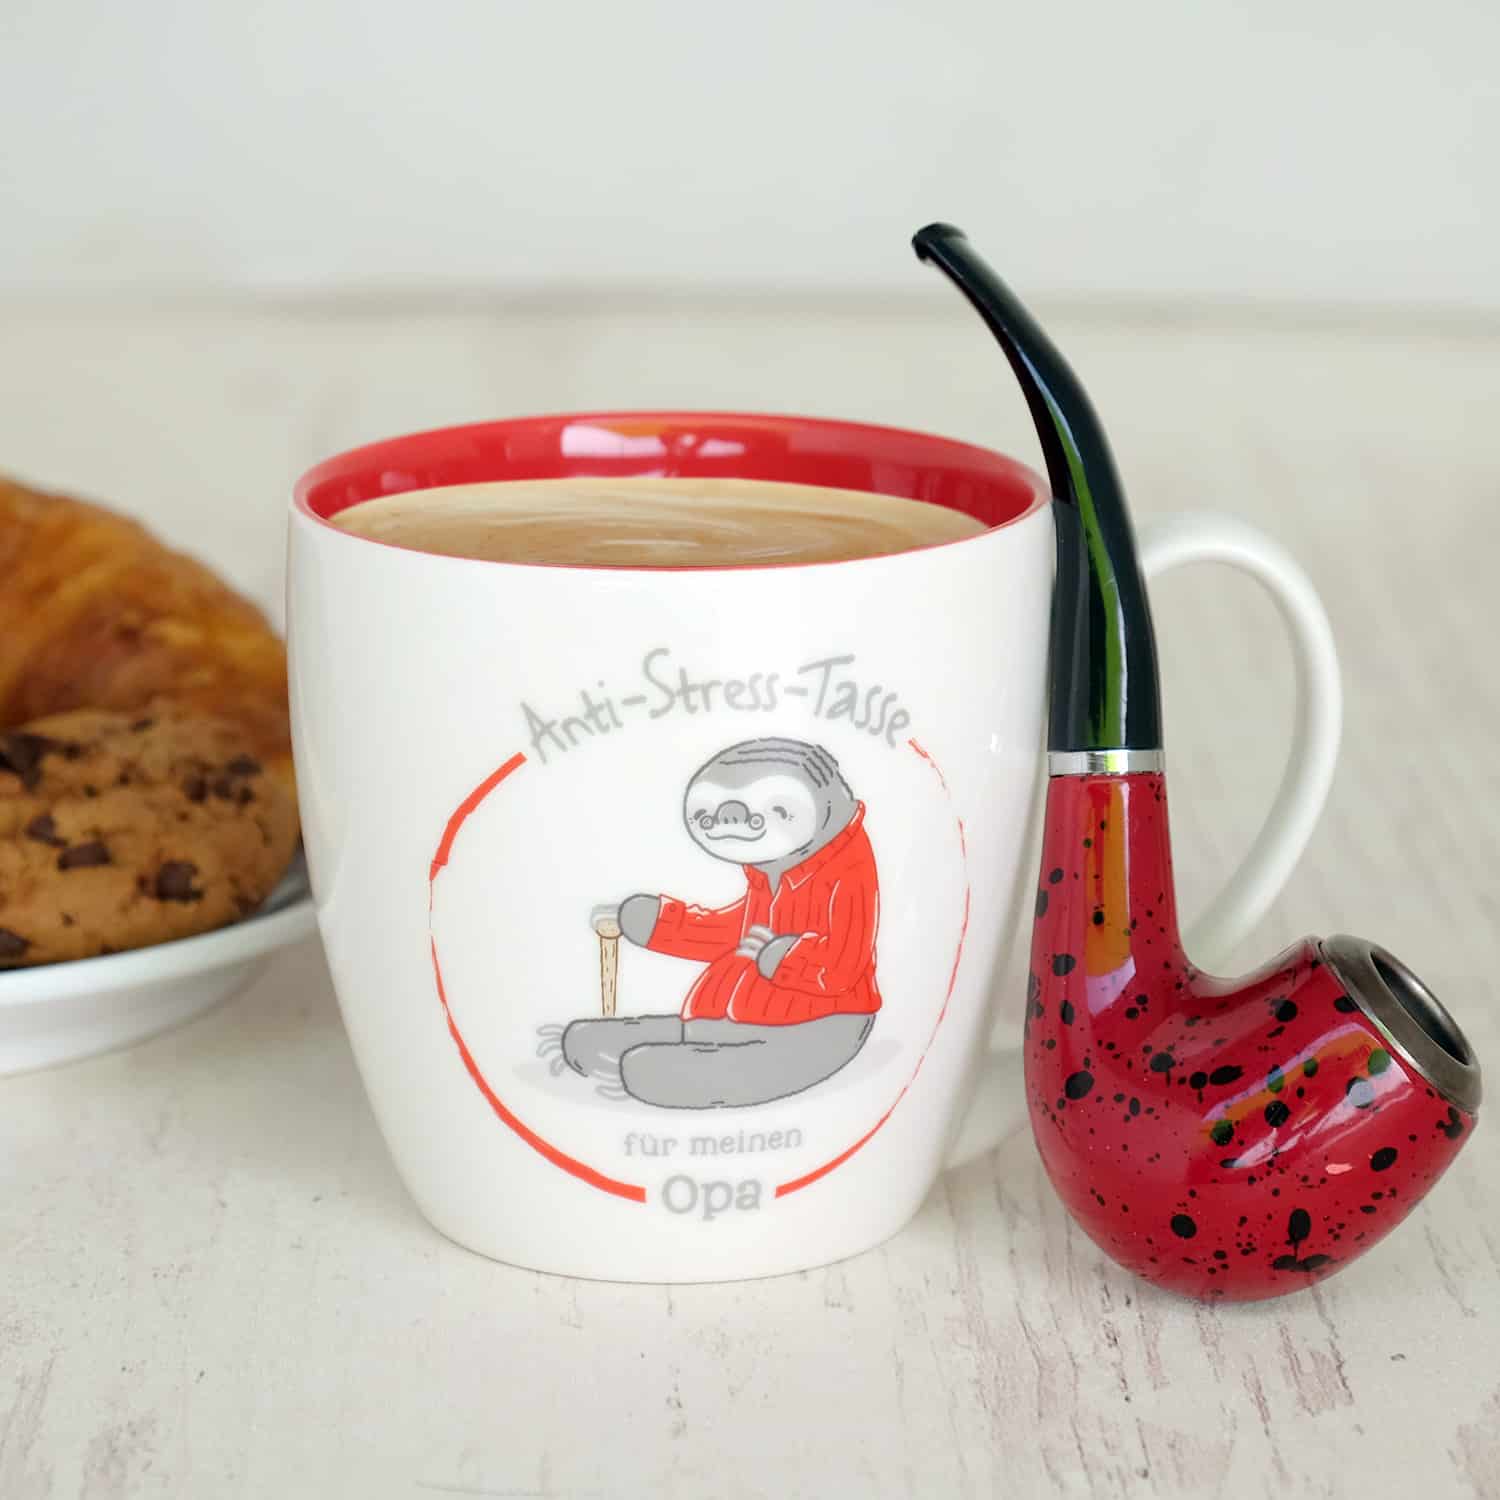 Weiße Tasse mit roten Akzenten, gefült mit Kaffee und dem Spruch "Anti-Stress-Tasse für meinen Opa" mit roten Akzenten